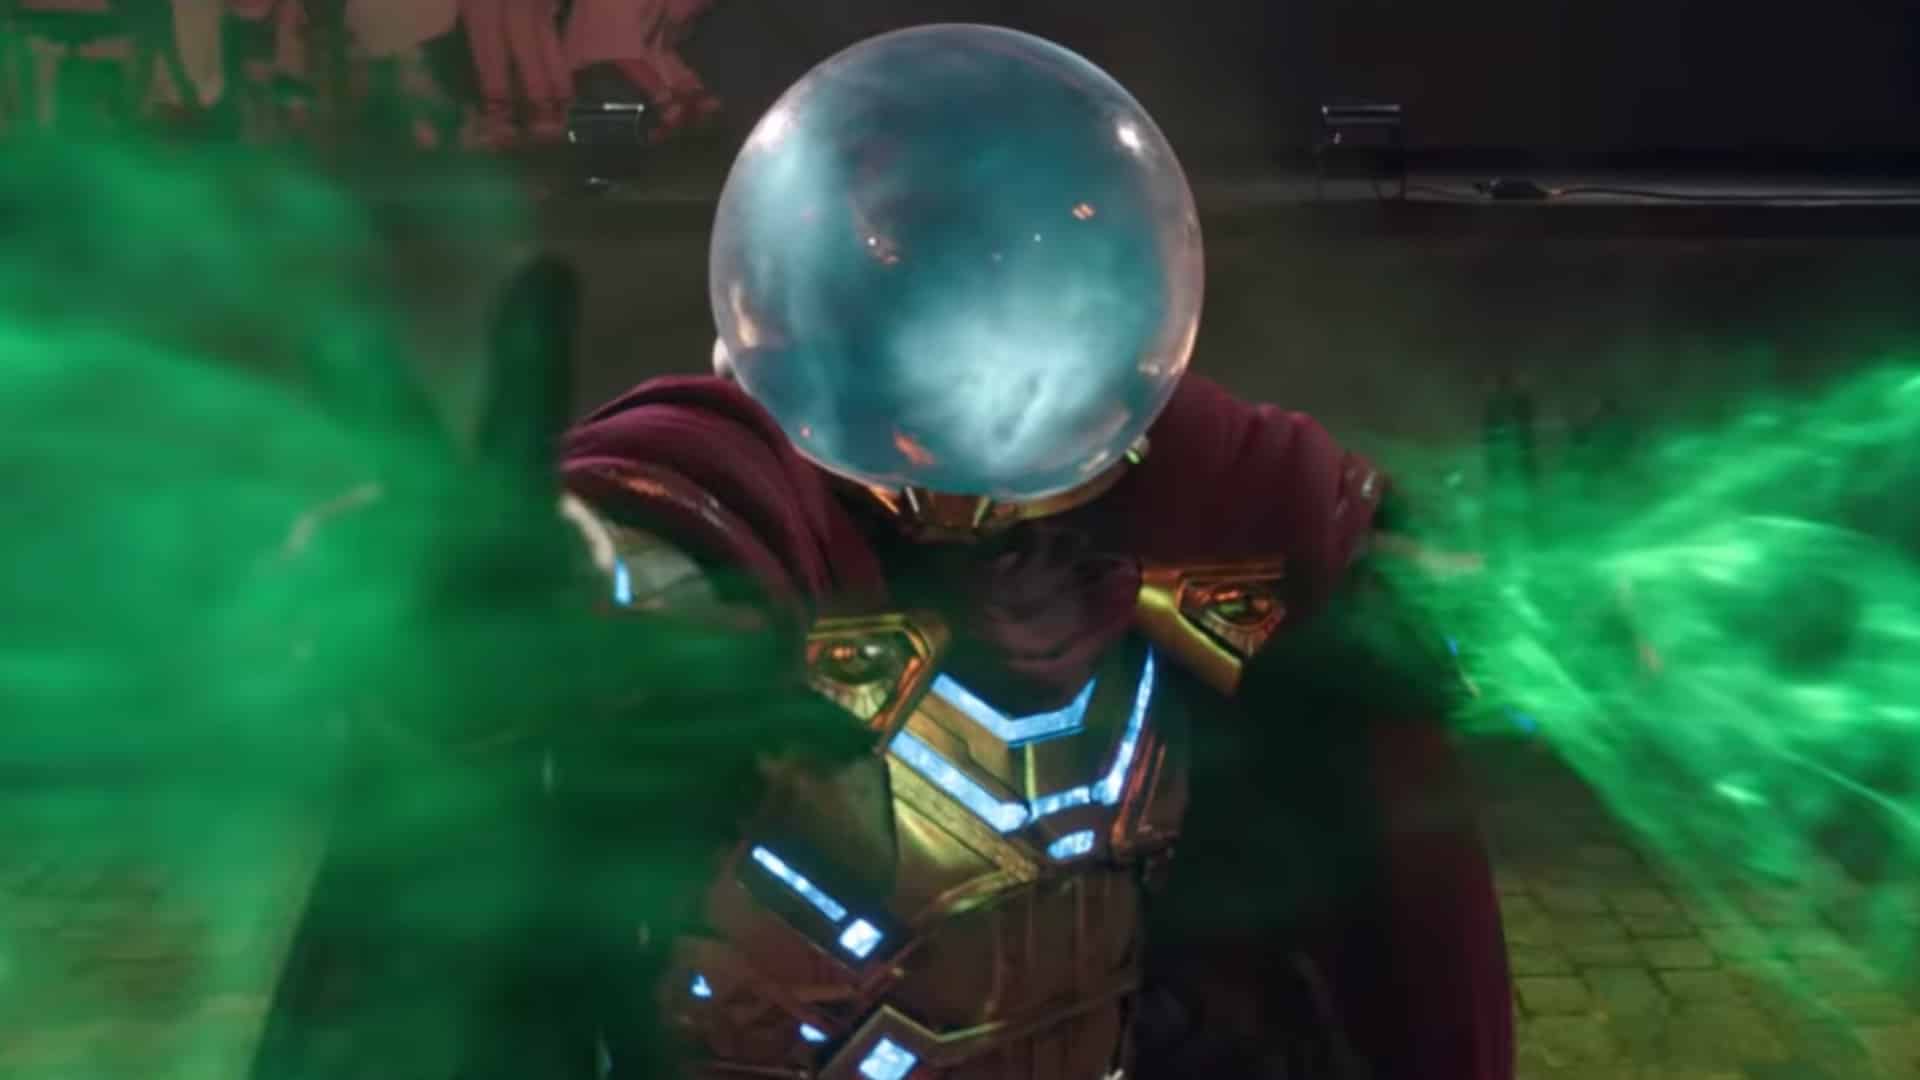 Mysterio: come sarebbe apparso in Spider-Man 4 di Sam Raimi